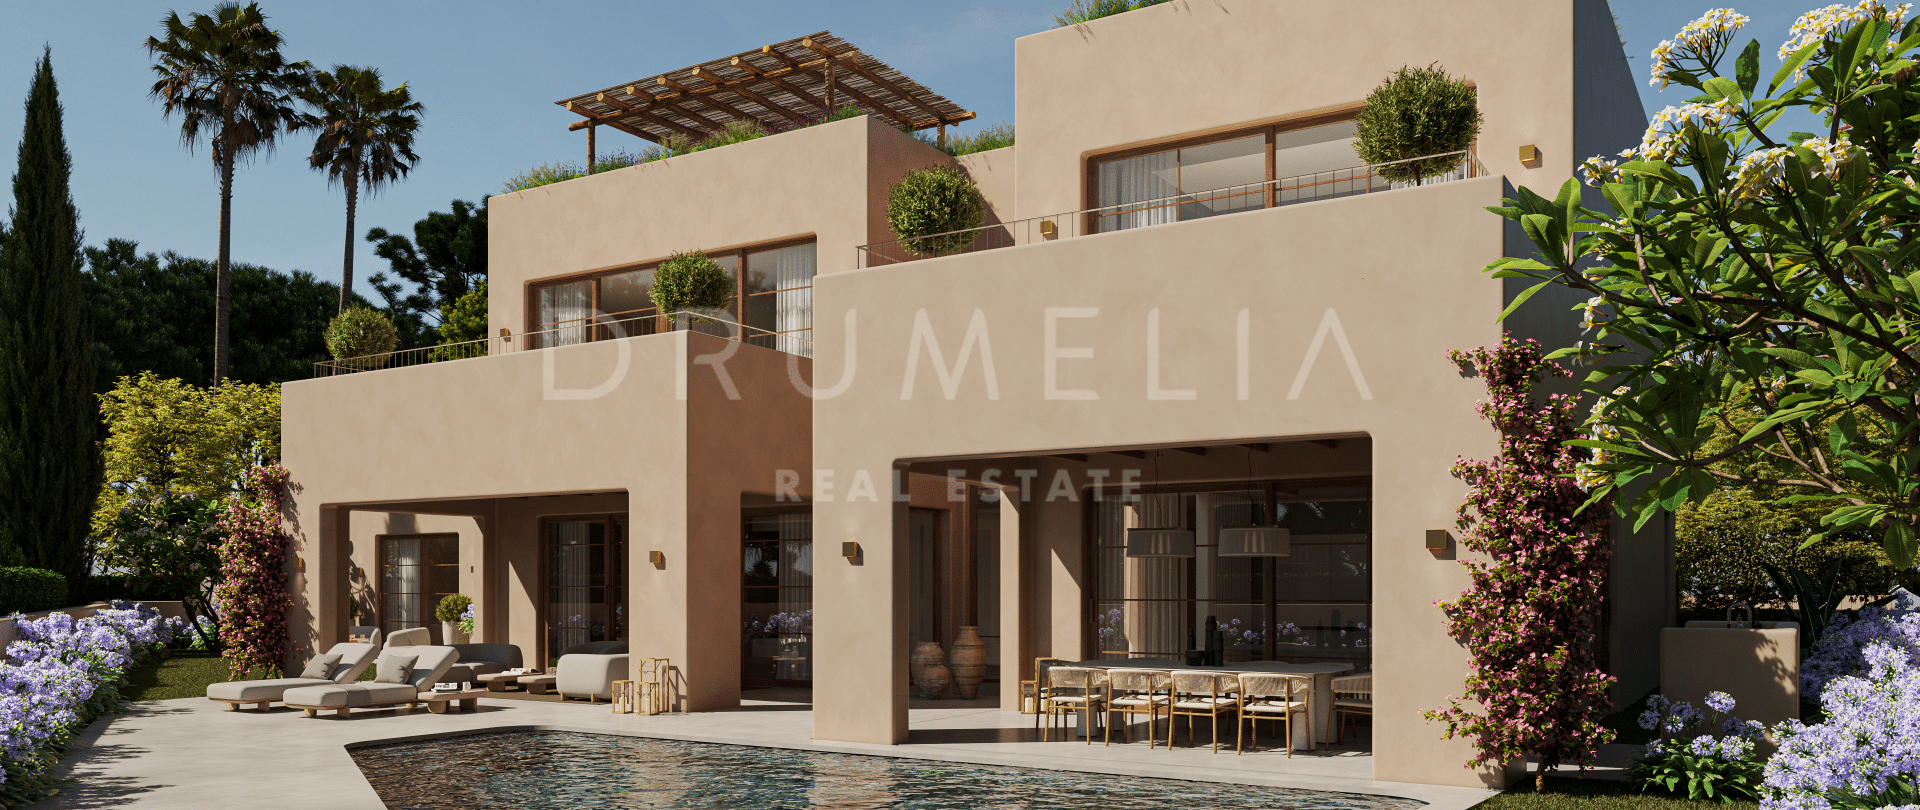 Exeptionell tomt och skräddarsytt arkitektoniskt unikt villaprojekt i Casa Blanca, Marbella